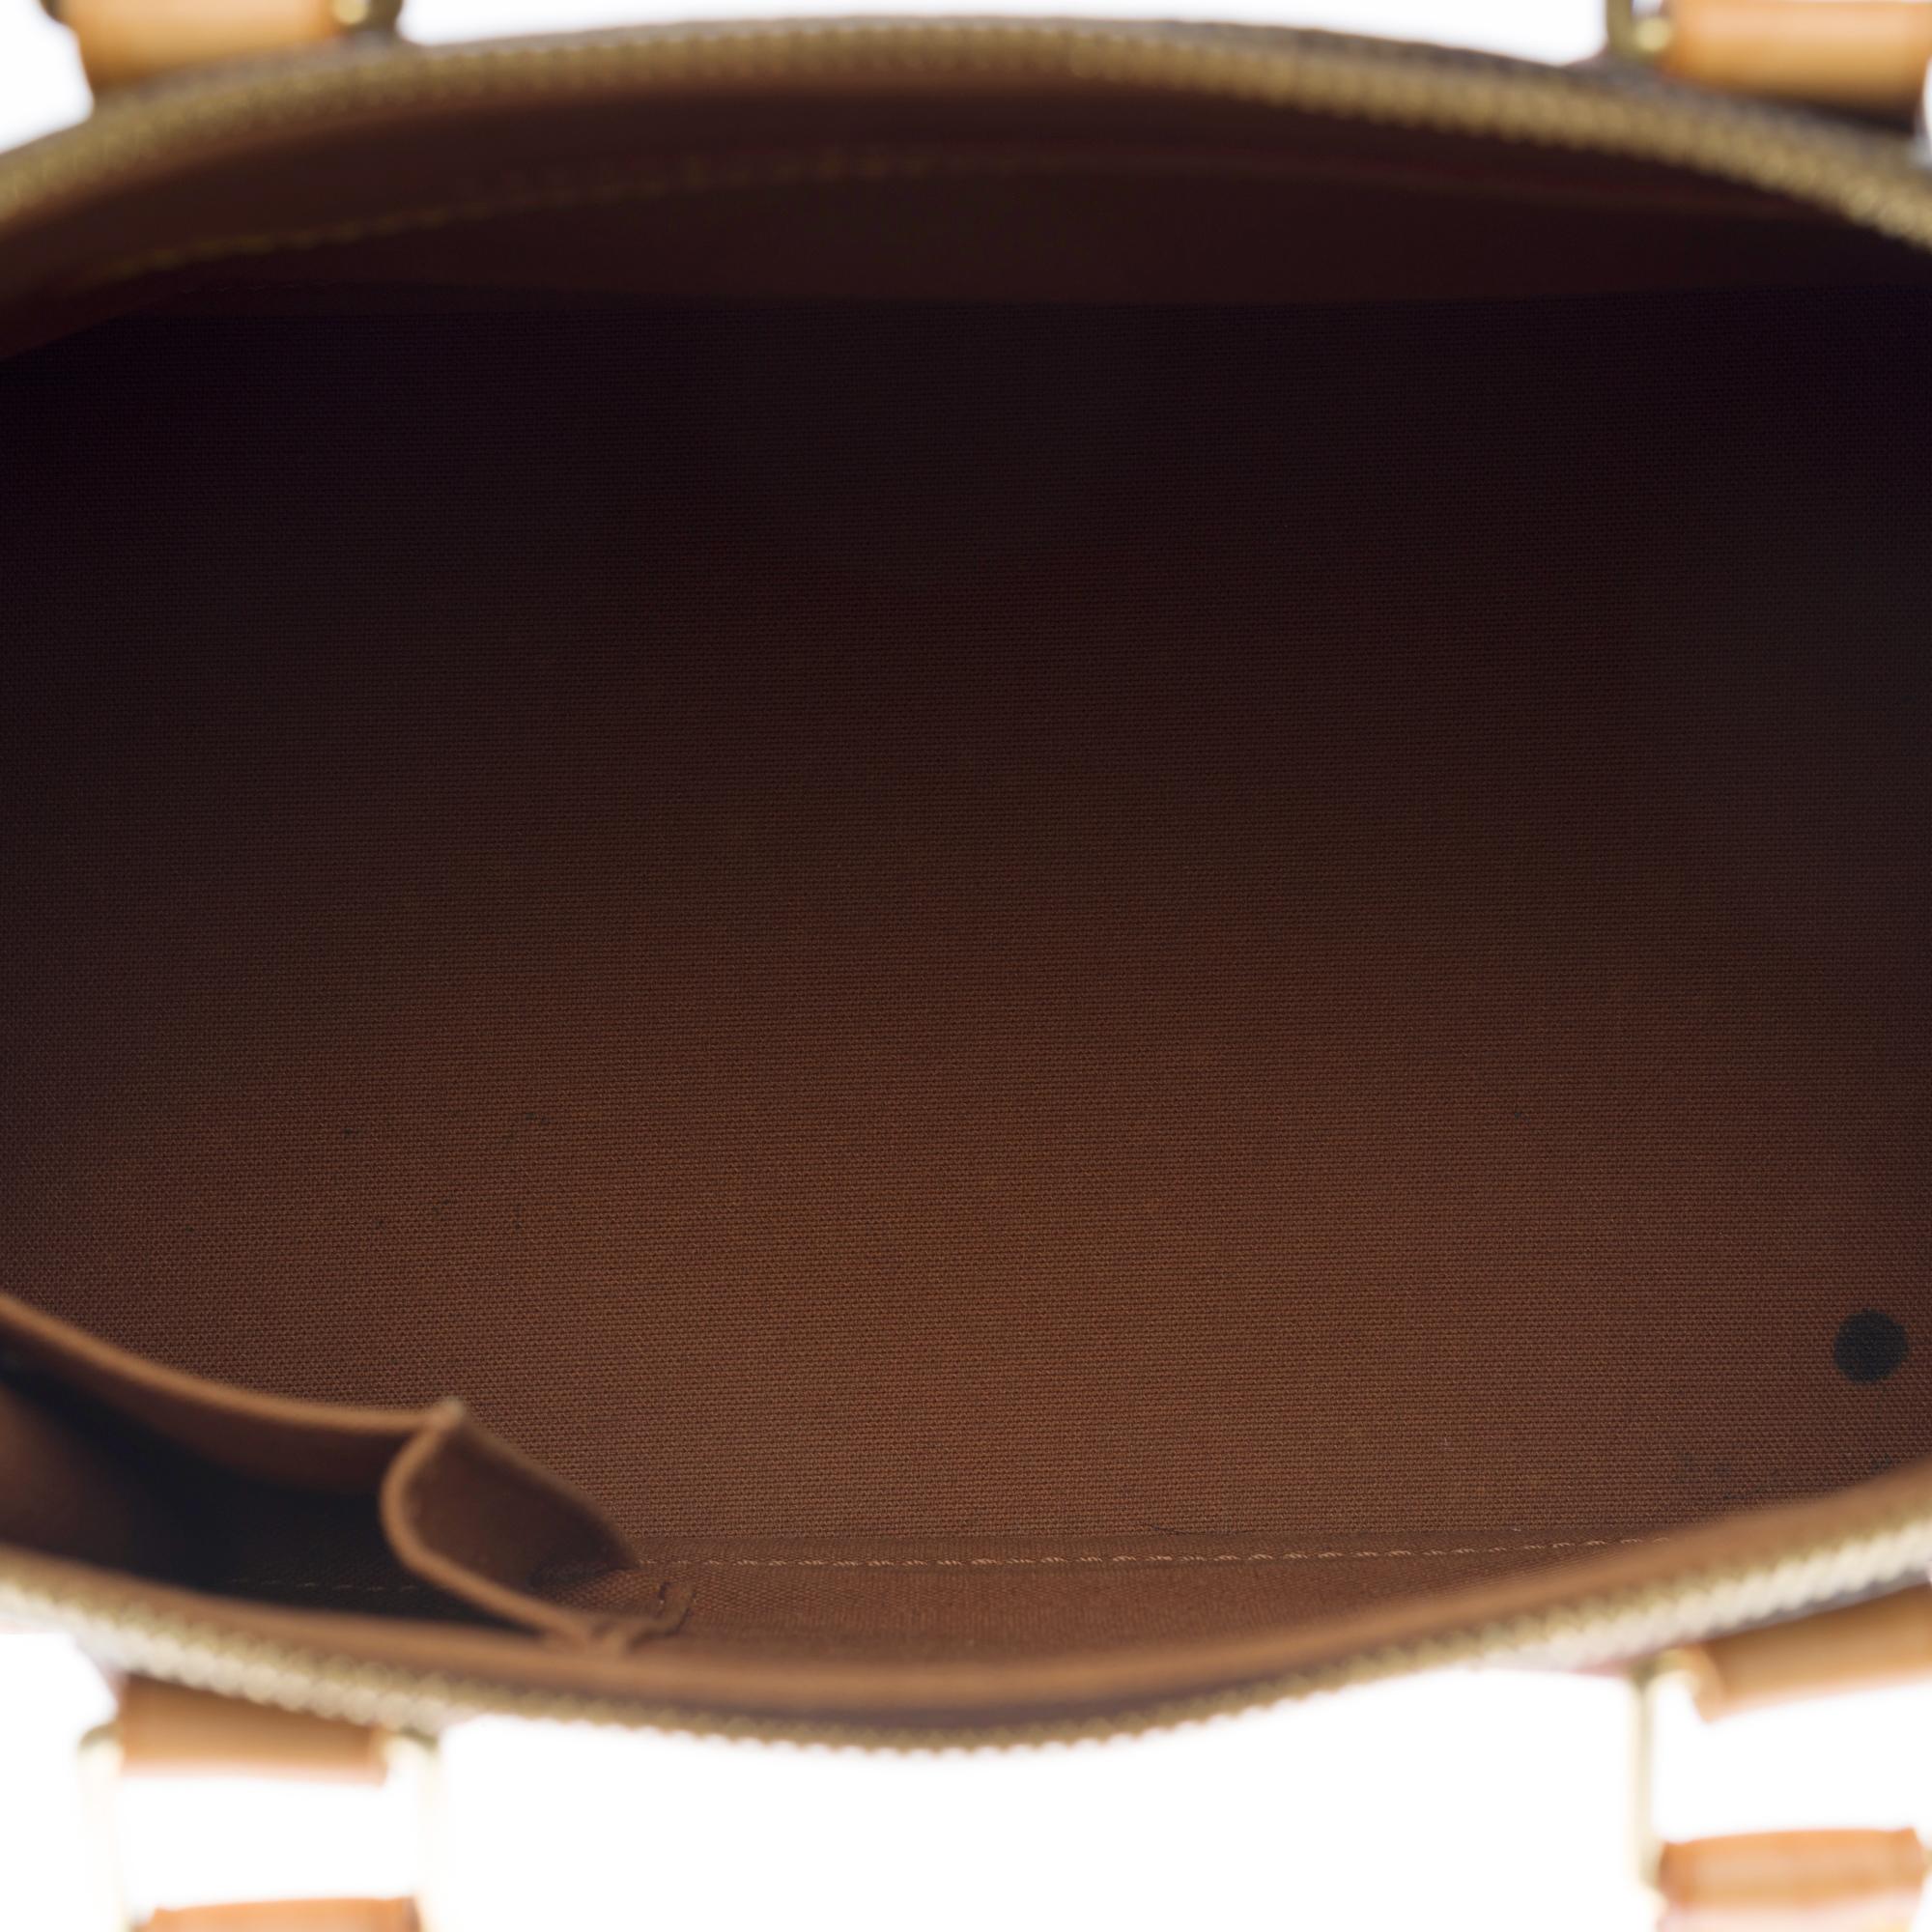 Louis Vuitton Alma MM handbag with strap in brown Monogram canvas In Good Condition In Paris, IDF